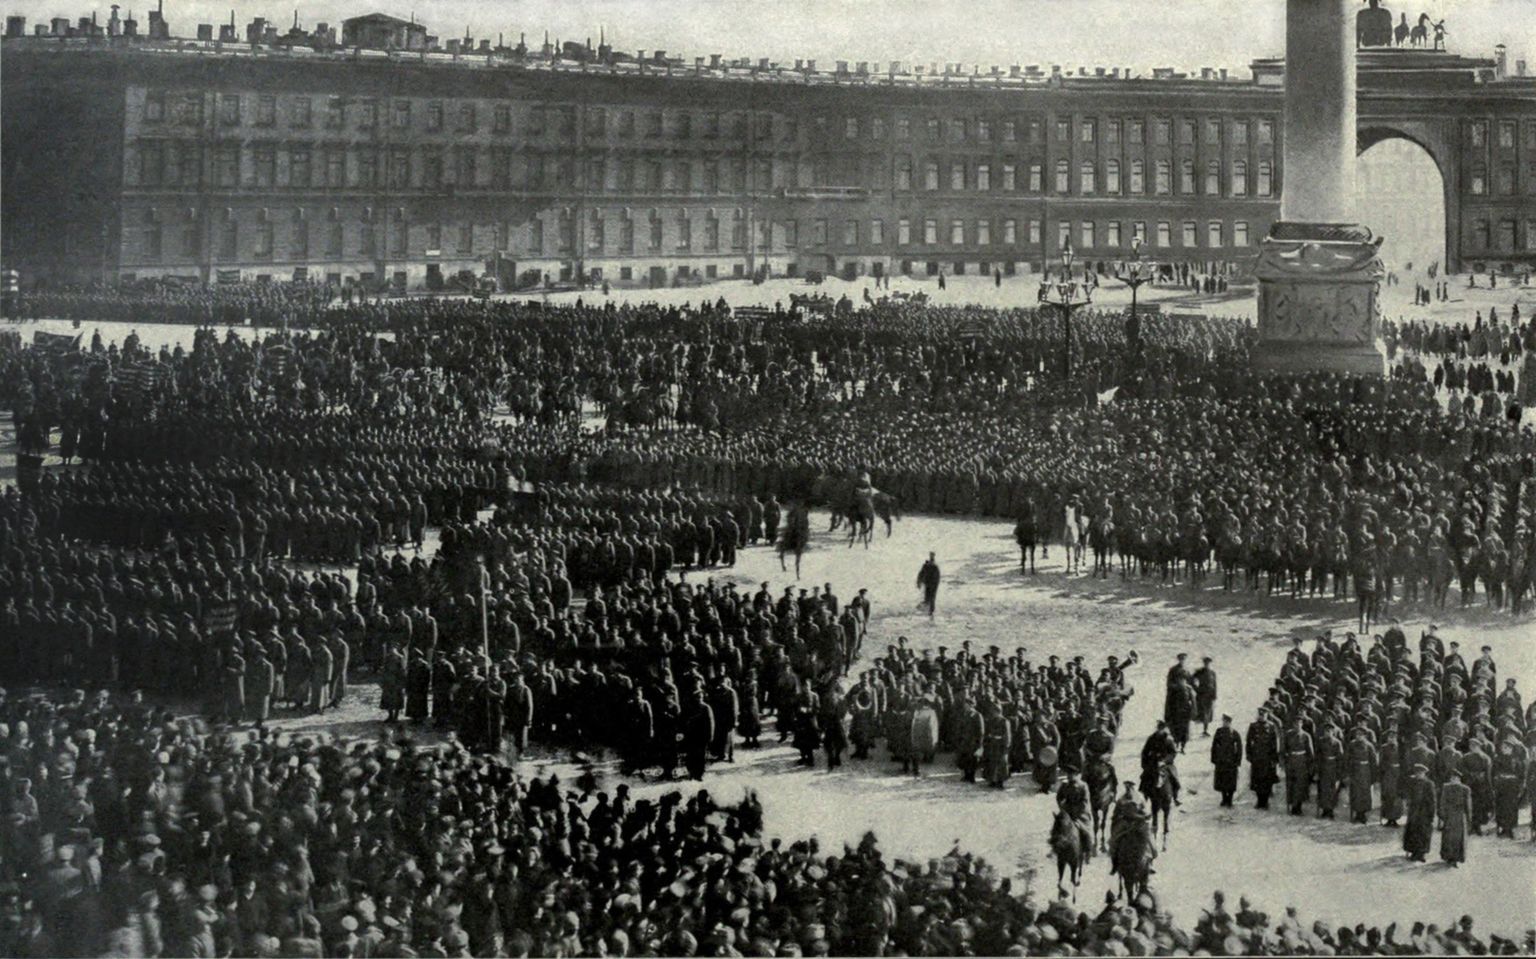 Vene armee ohvitserid 1917. aastal oktoobrirevolutsioonile truudusevannet andmas.